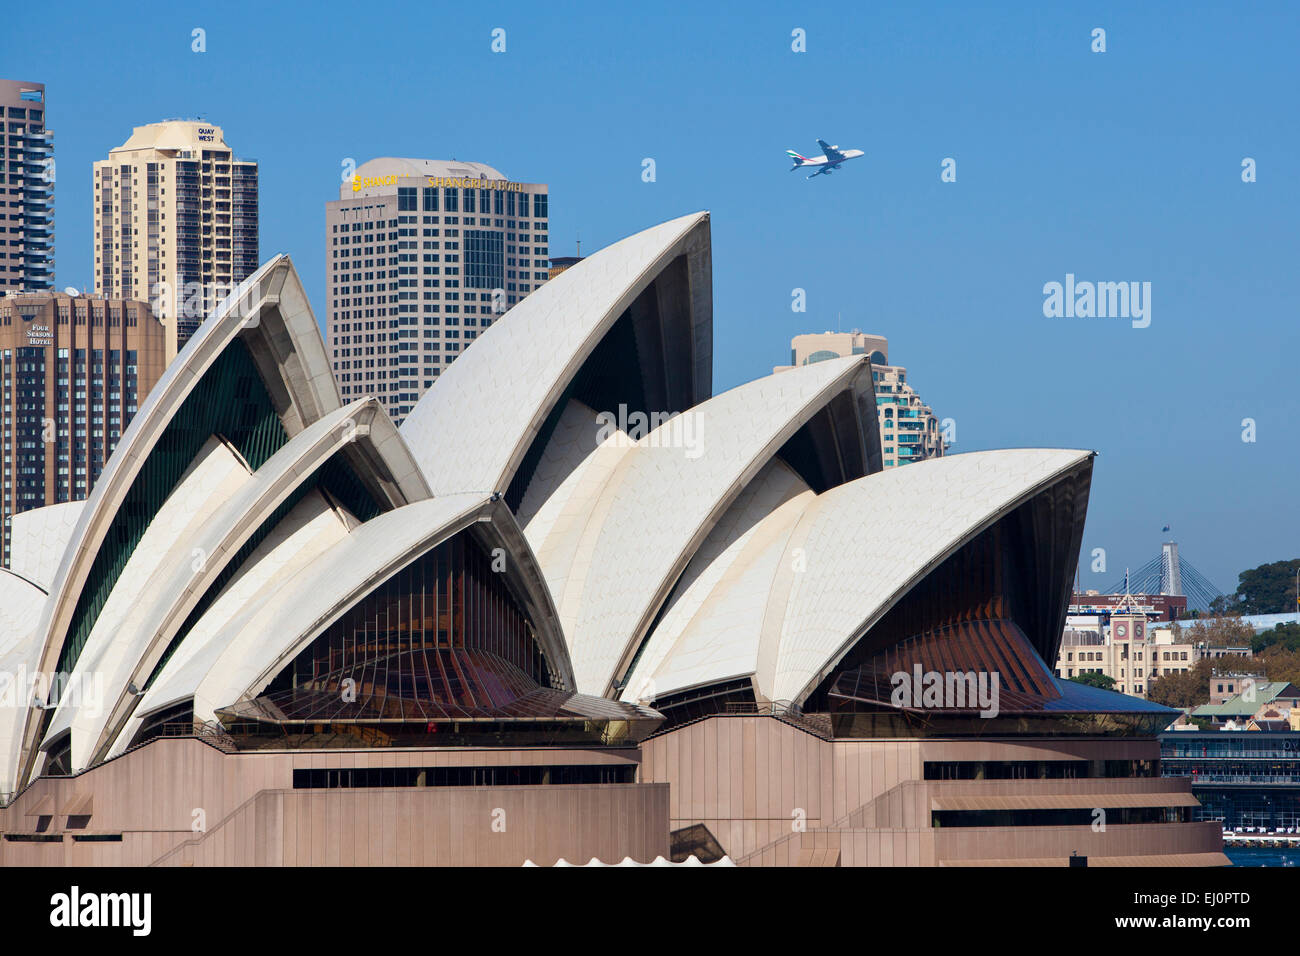 Opera House, Sydney, NSW, Nueva Gales del Sur, Australia, en los techos de los edificios de la ciudad, el avión que sobrevolaba, avión, famoso, icono, IKON, Foto de stock